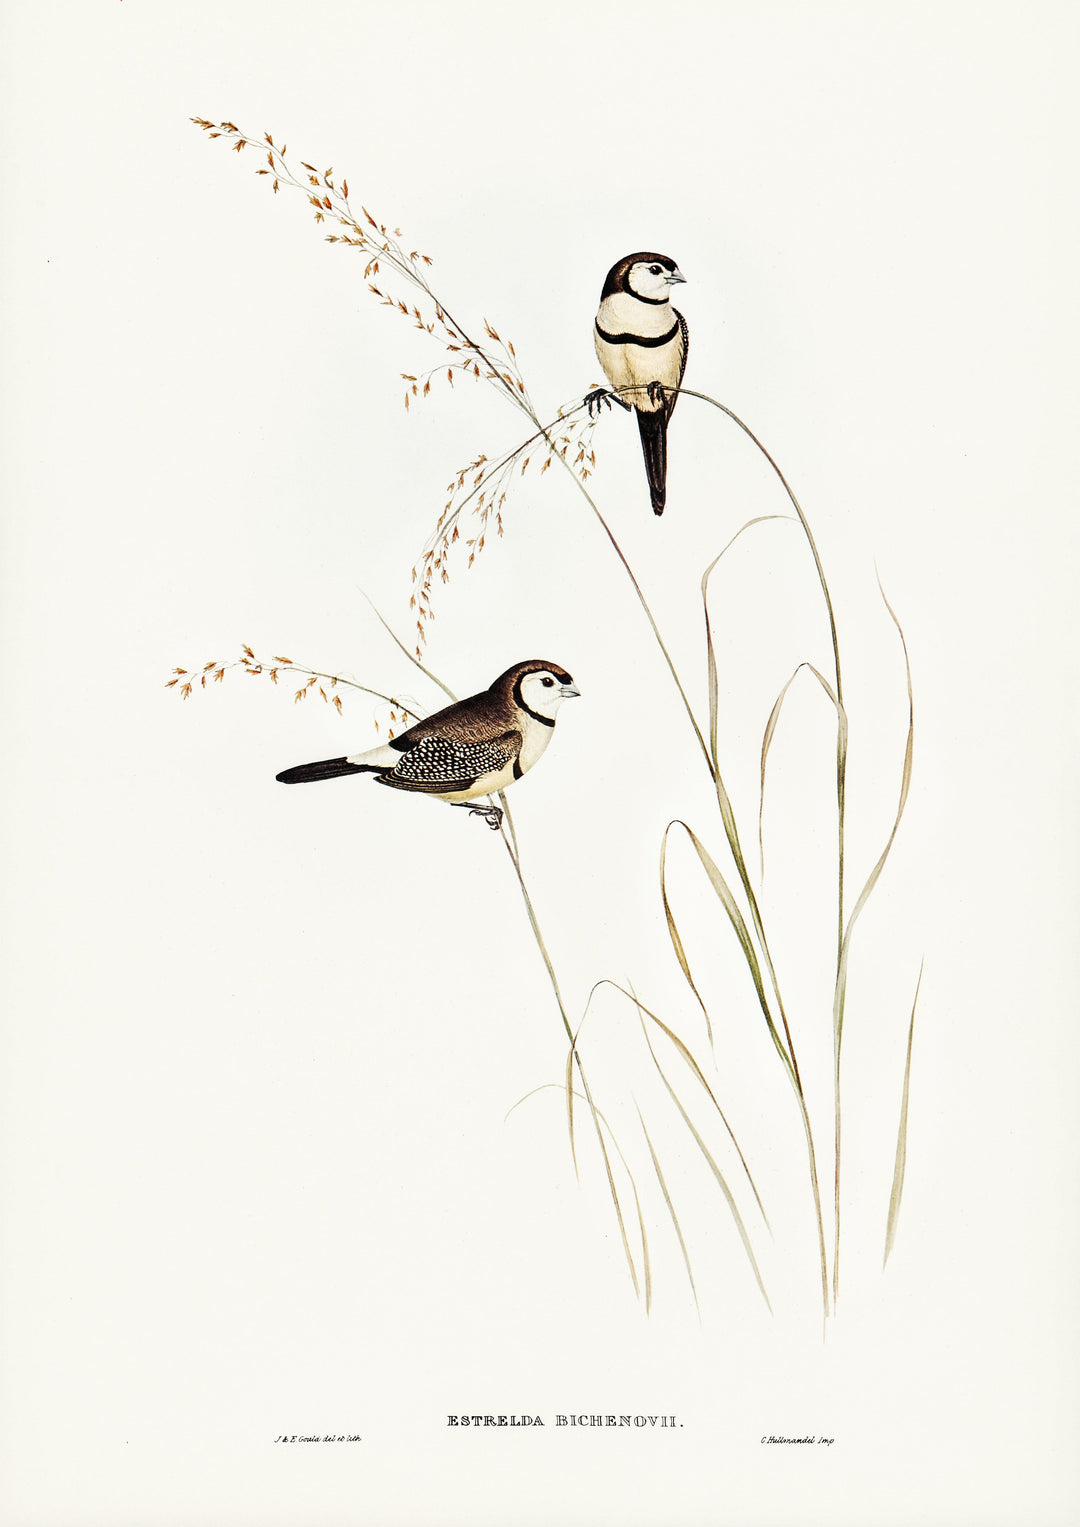 Bichenos Fink (Estrelda Bichenovii), illustriert von Elizabeth Gould - Printree.ch farbenfroh, handgezeichnet, john gould, Ornithologie, Poster, Singvogel, vintage, Vogel